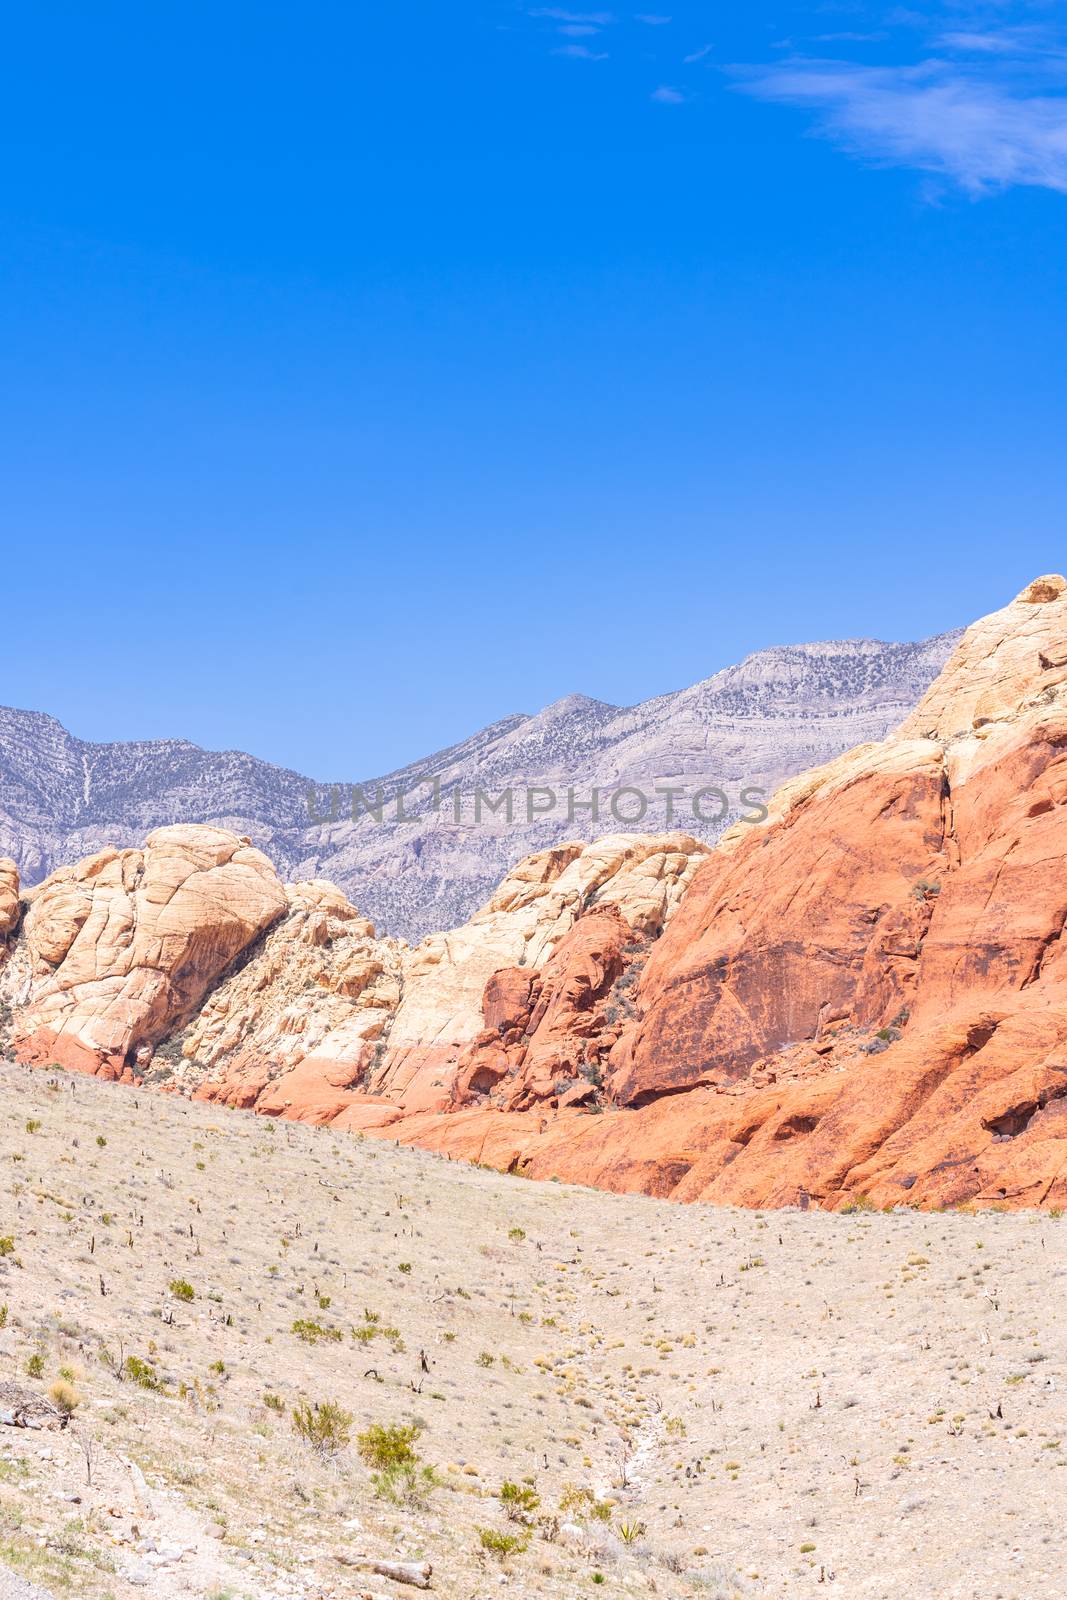 Red Rock Canyon Las Vegas by vichie81